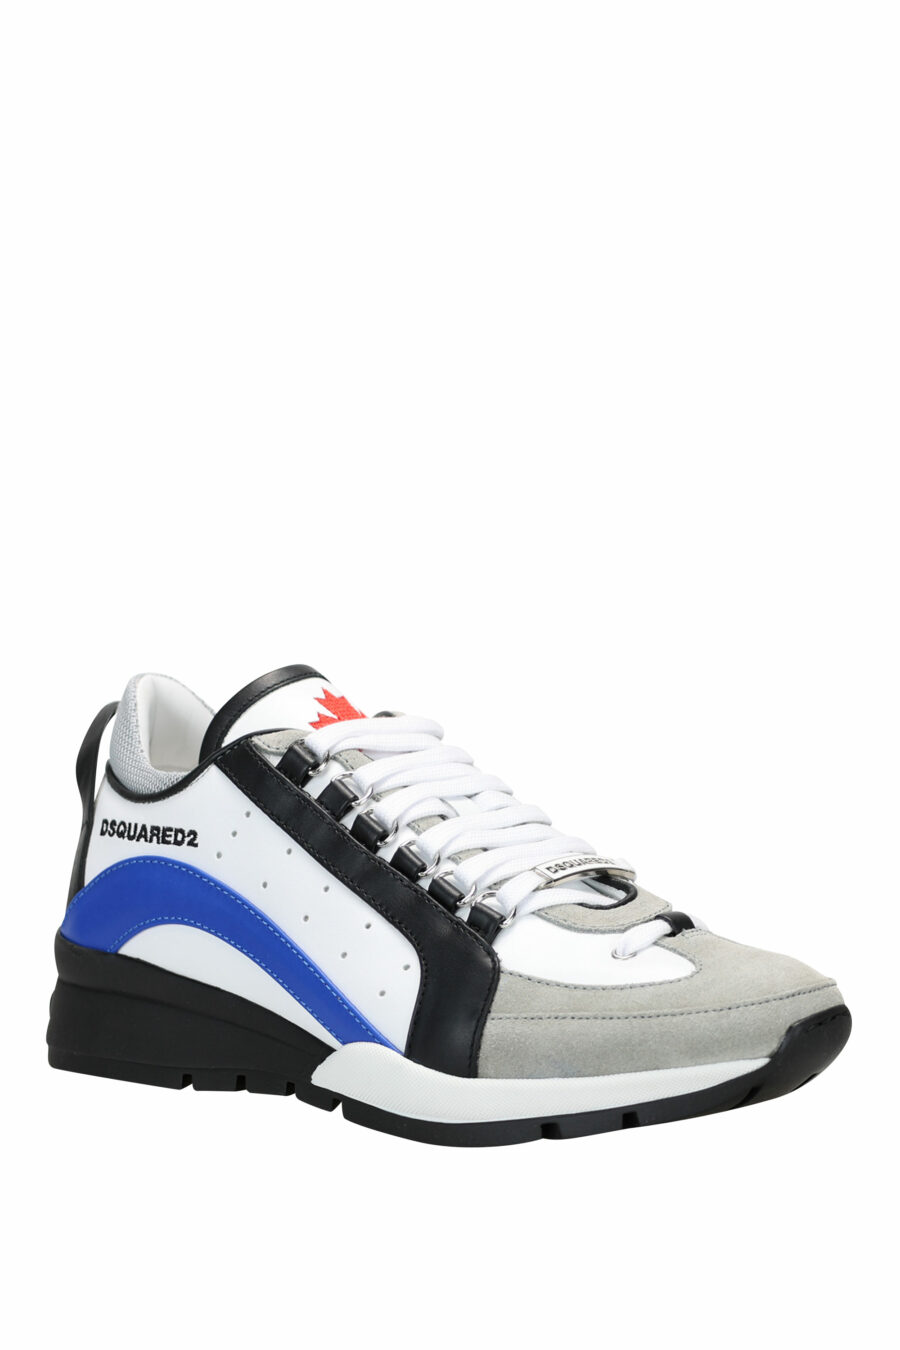 Zapatillas blancas con negro y azul y minilogo - 8055777243701 1